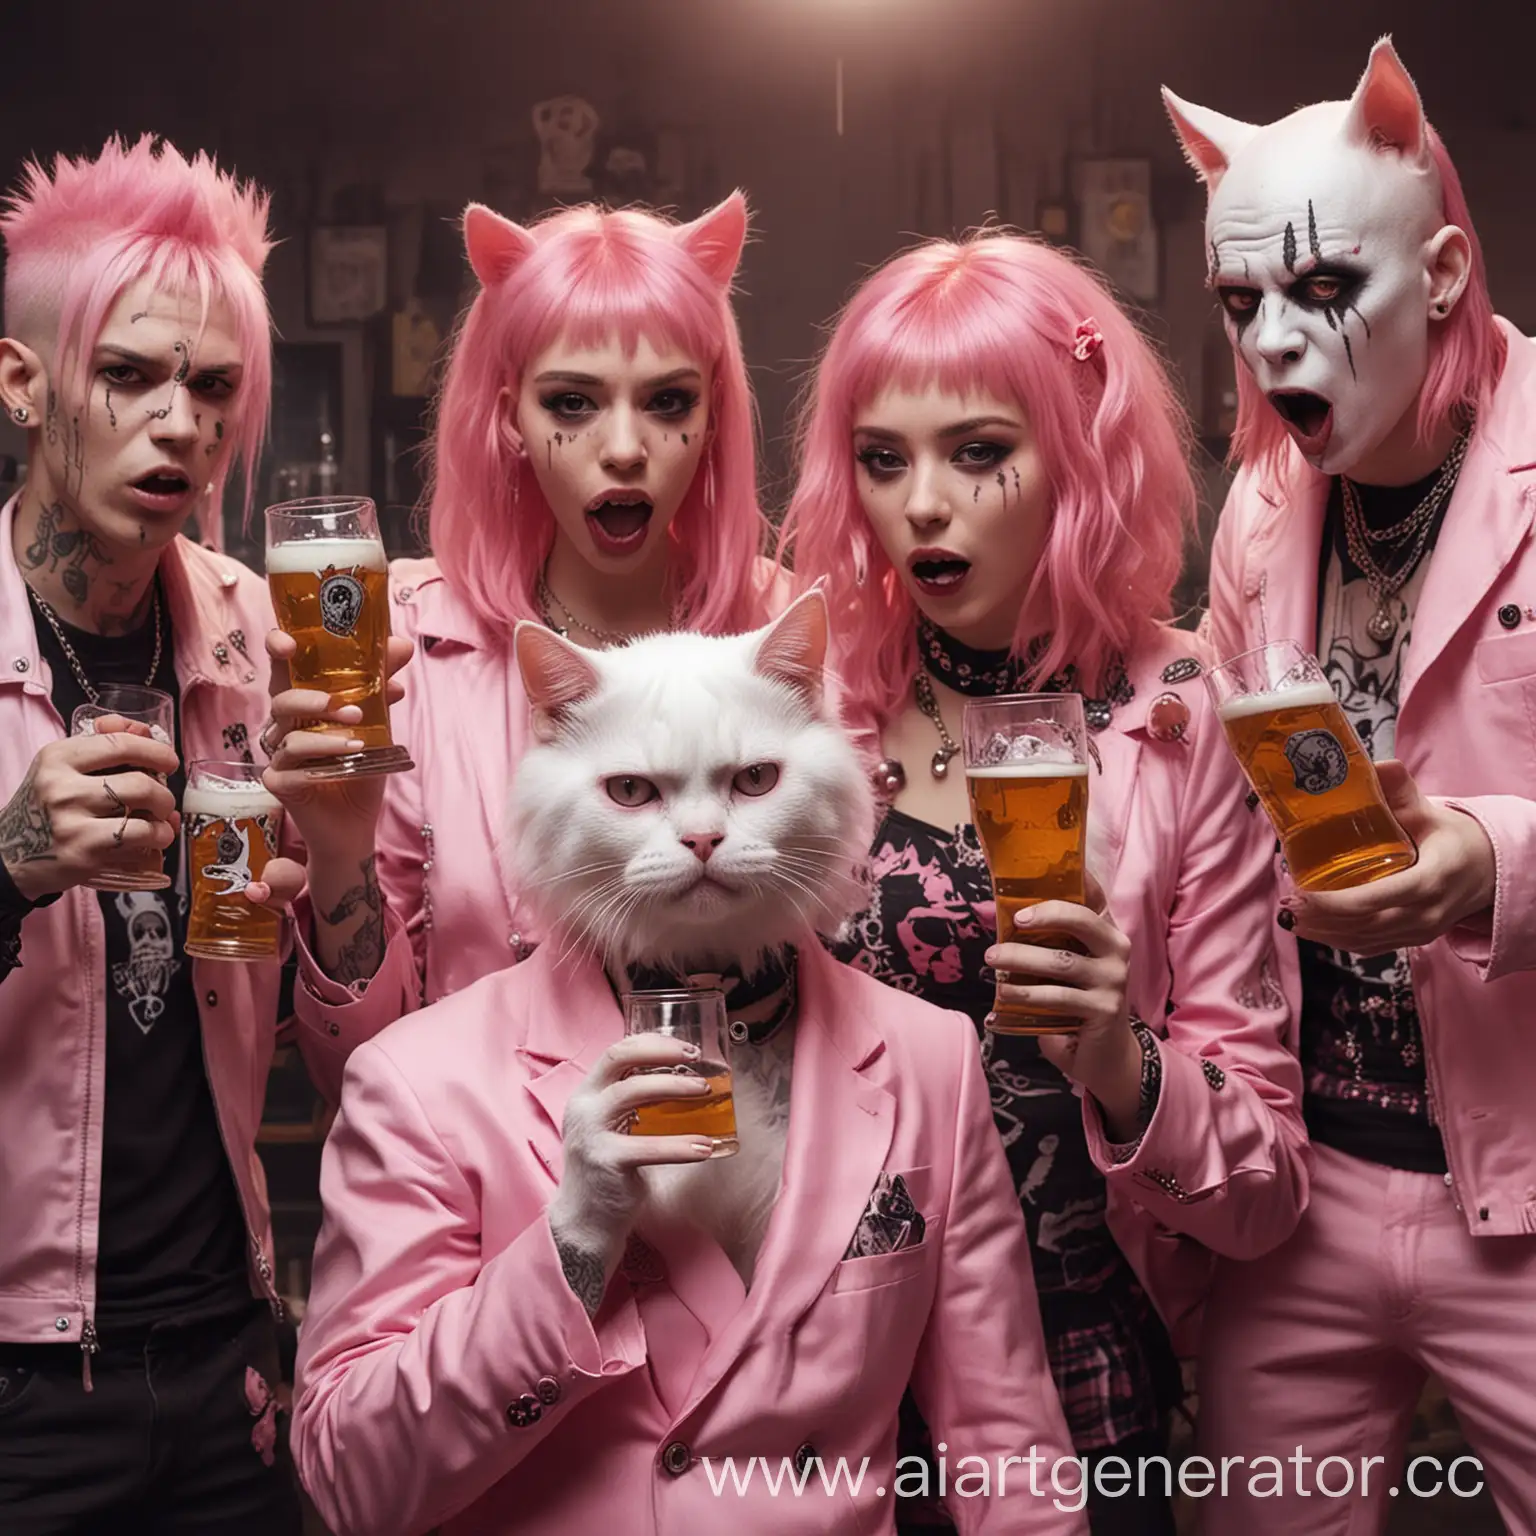 шесть парней неформалов, фриков, пьют пиво рядом с лысой кошкой в розовом костюме и две очеровательных красотки, одна с розовыми волосами, а вторая плачет, духи, призраки, демоны